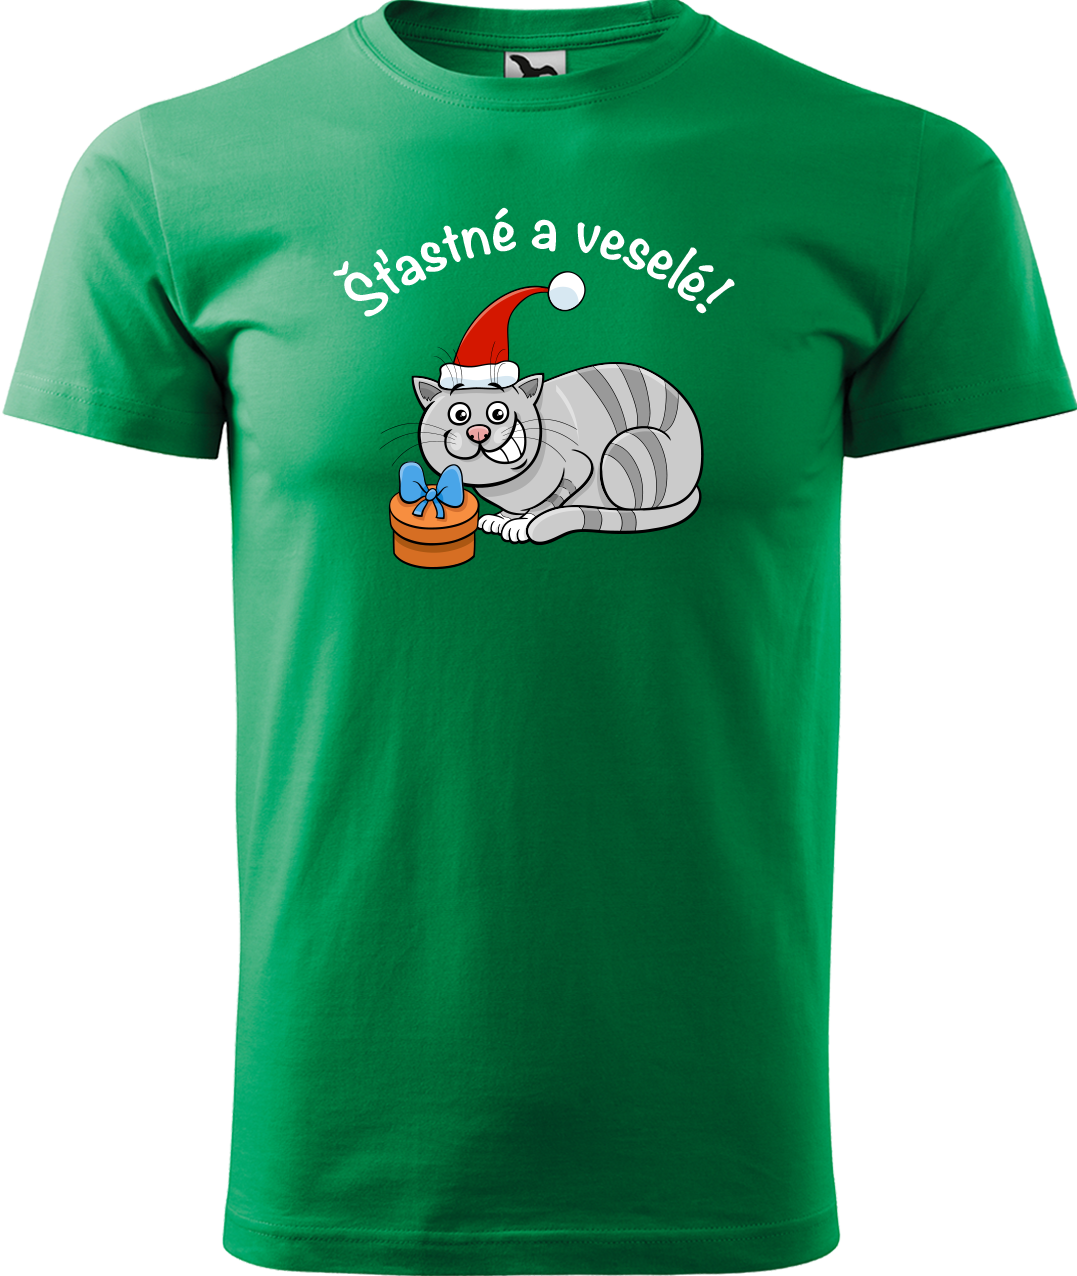 Pánské vánoční tričko - Šťastné a veselé Velikost: M, Barva: Středně zelená (16)